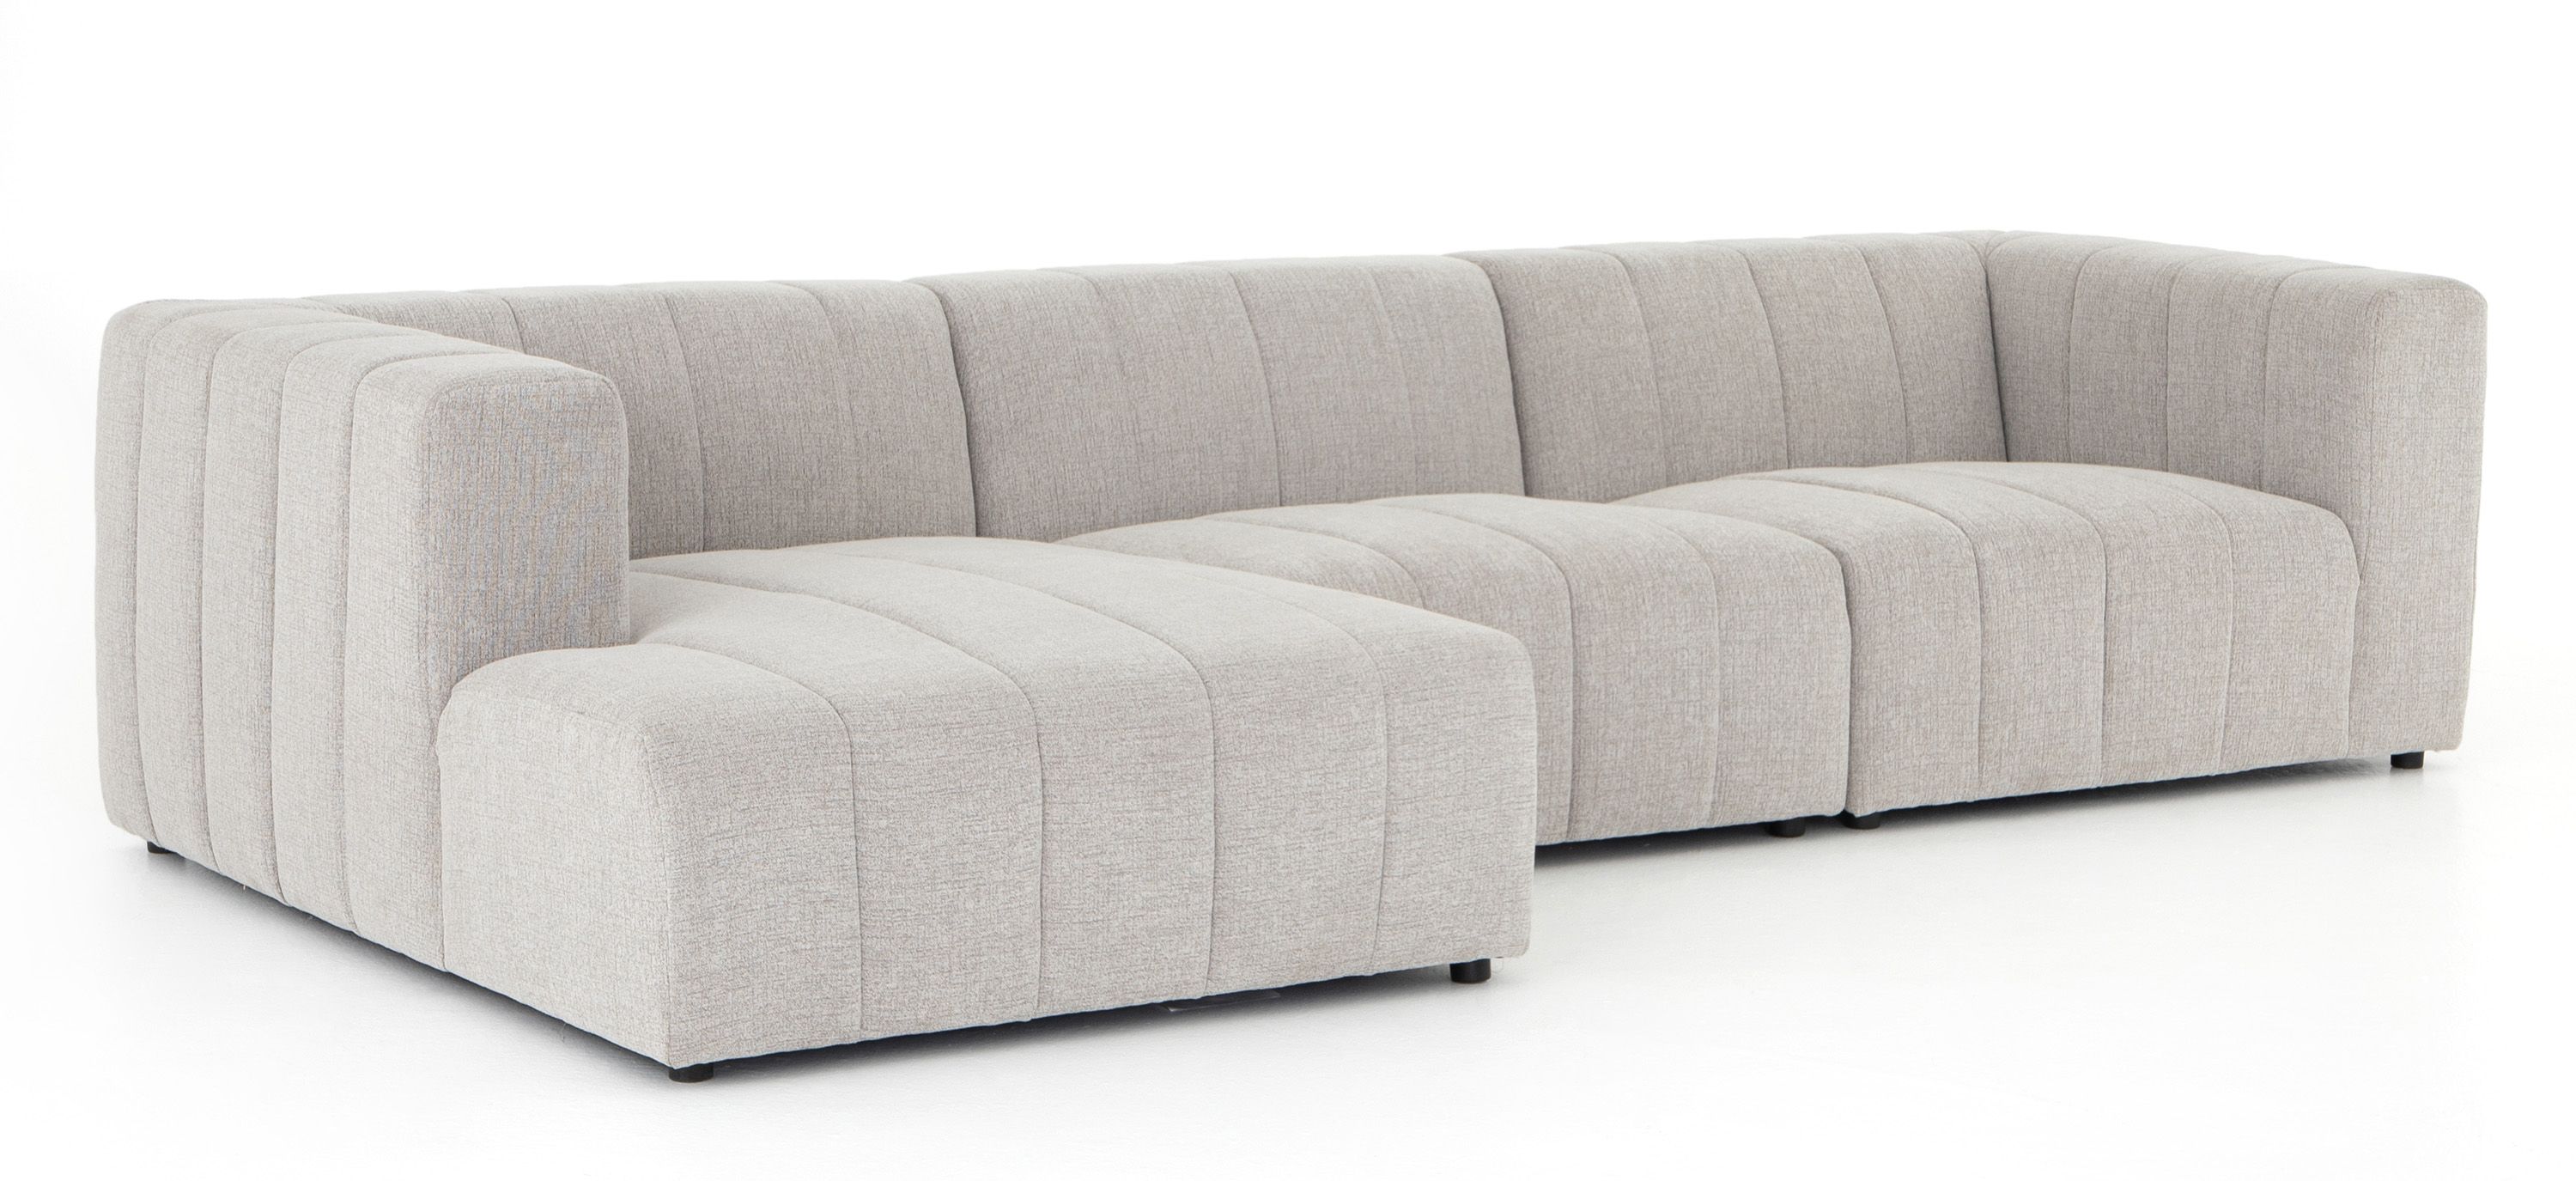 Sparrow 3-pc. Modular Sectional Sofa